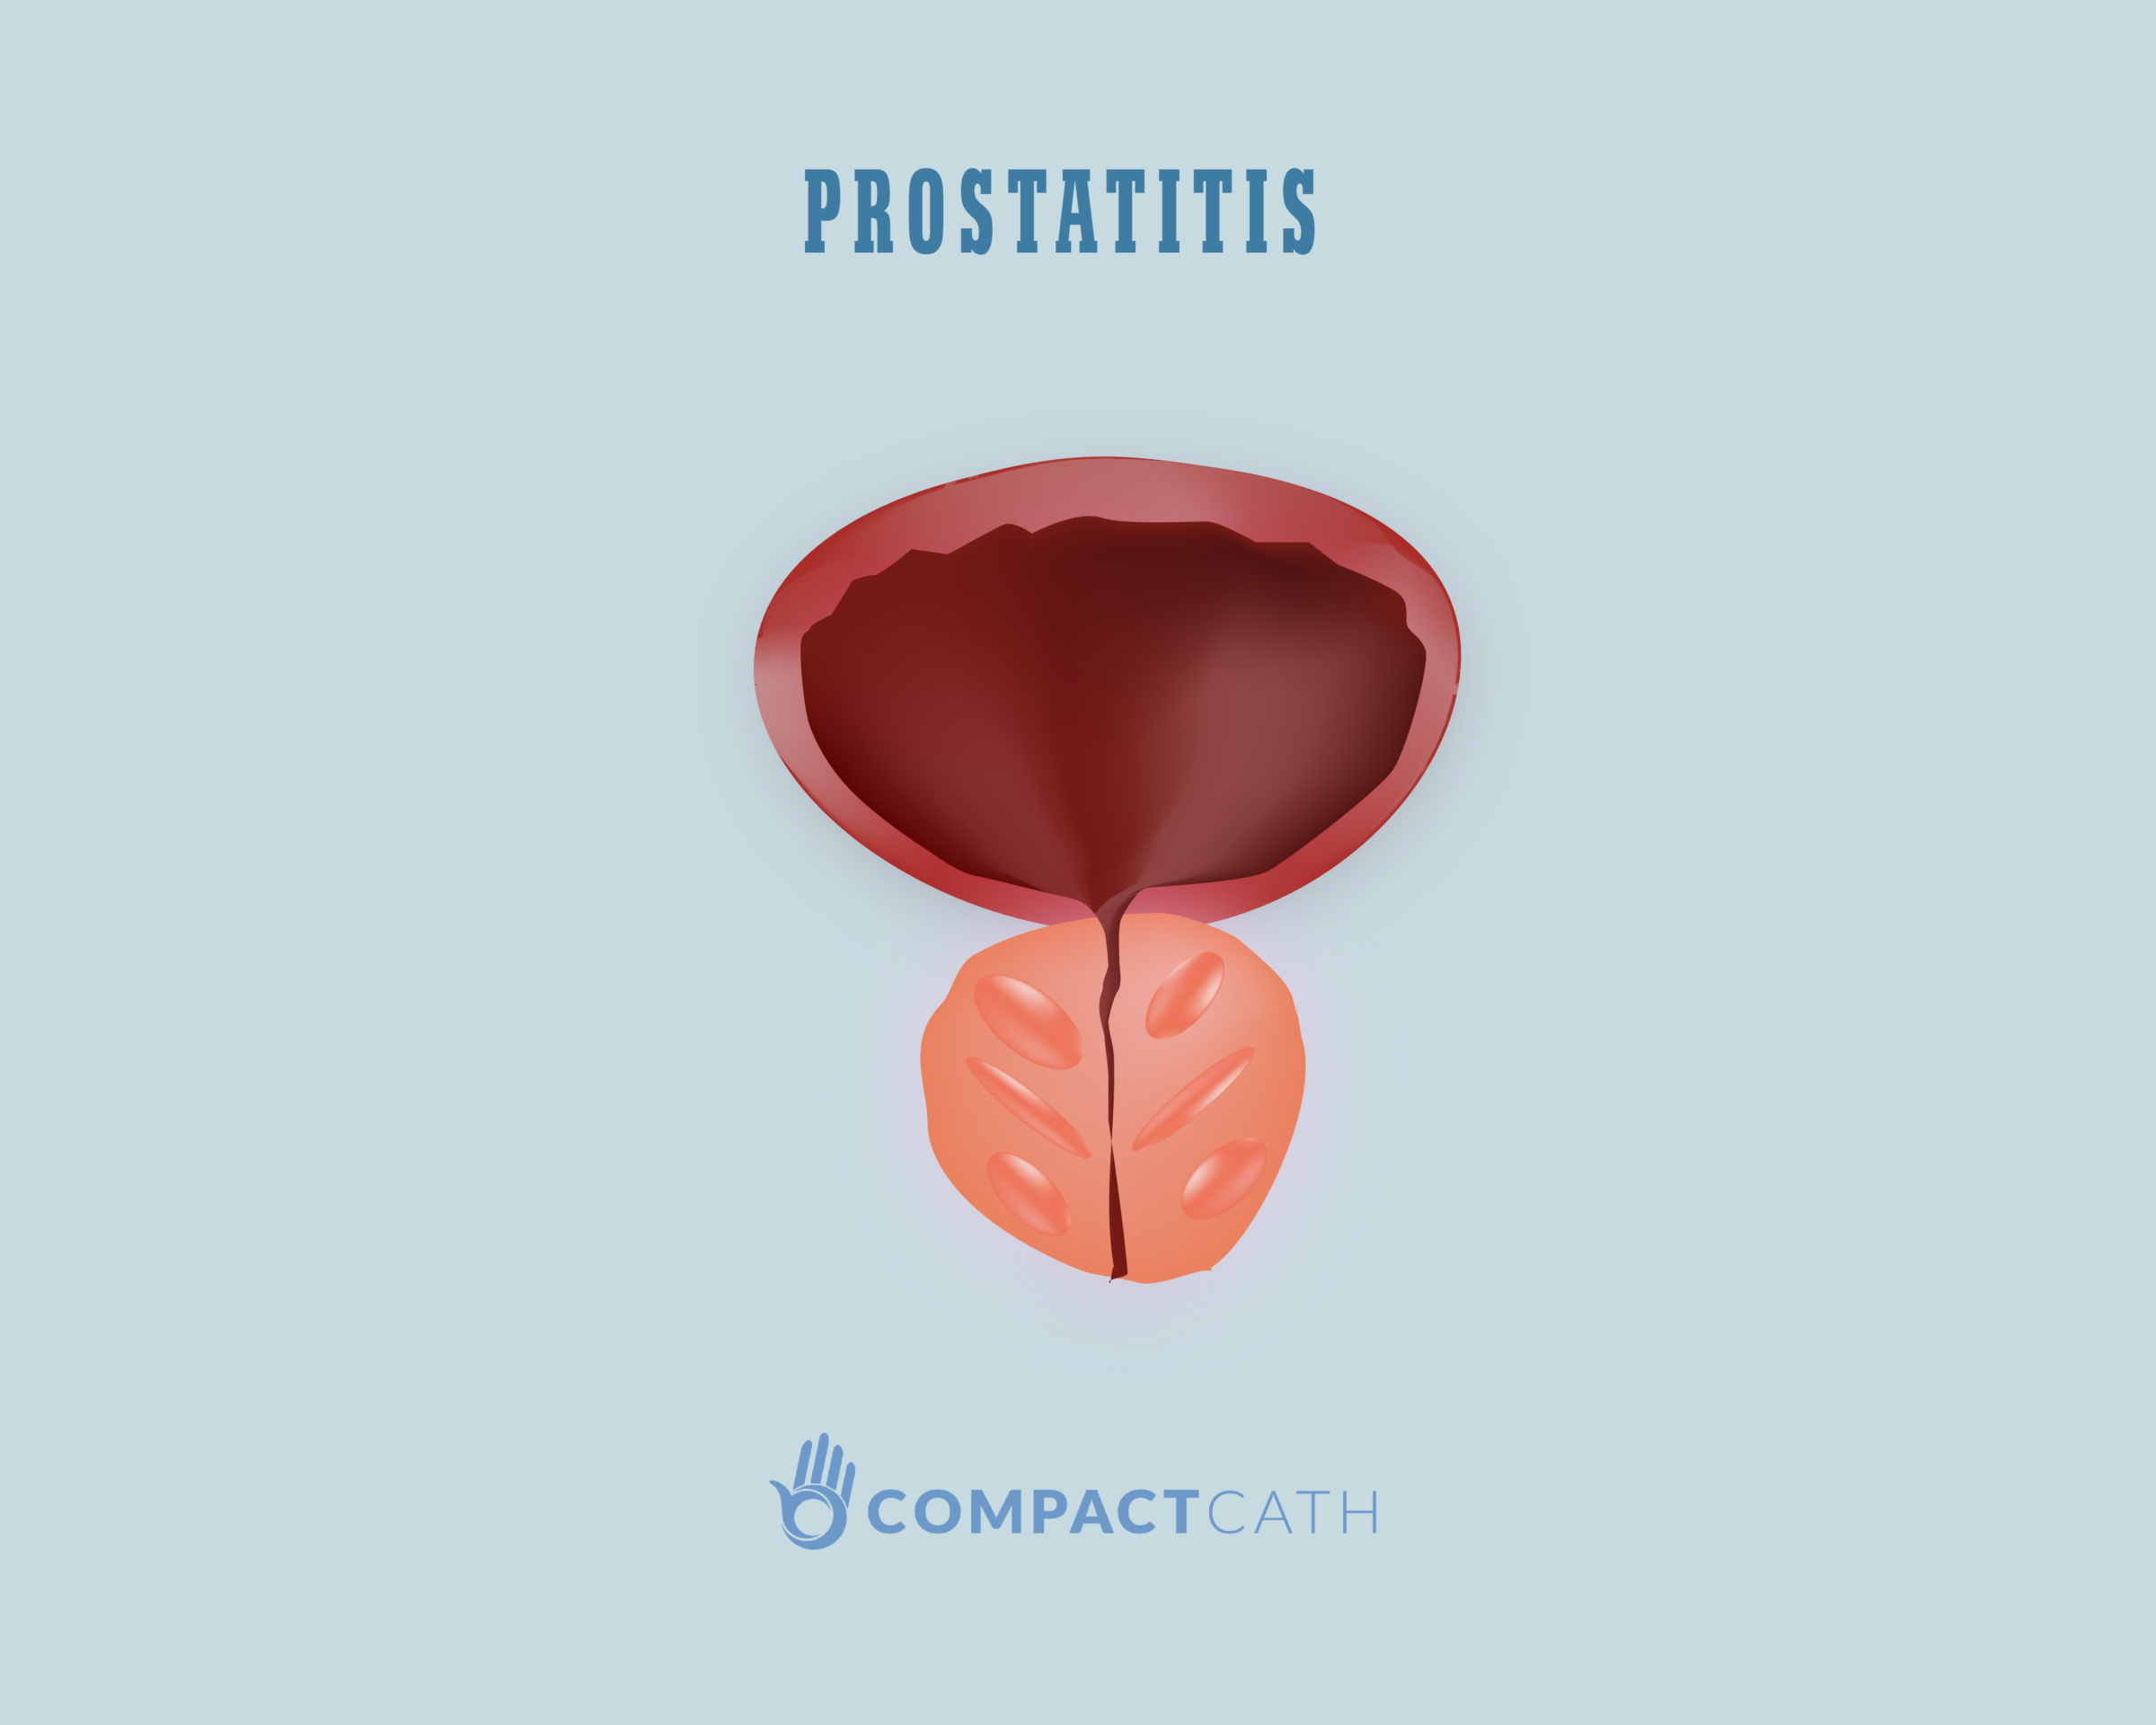 Prostatitis 4 év hogyan lehet egy prosztatitis embert kapni